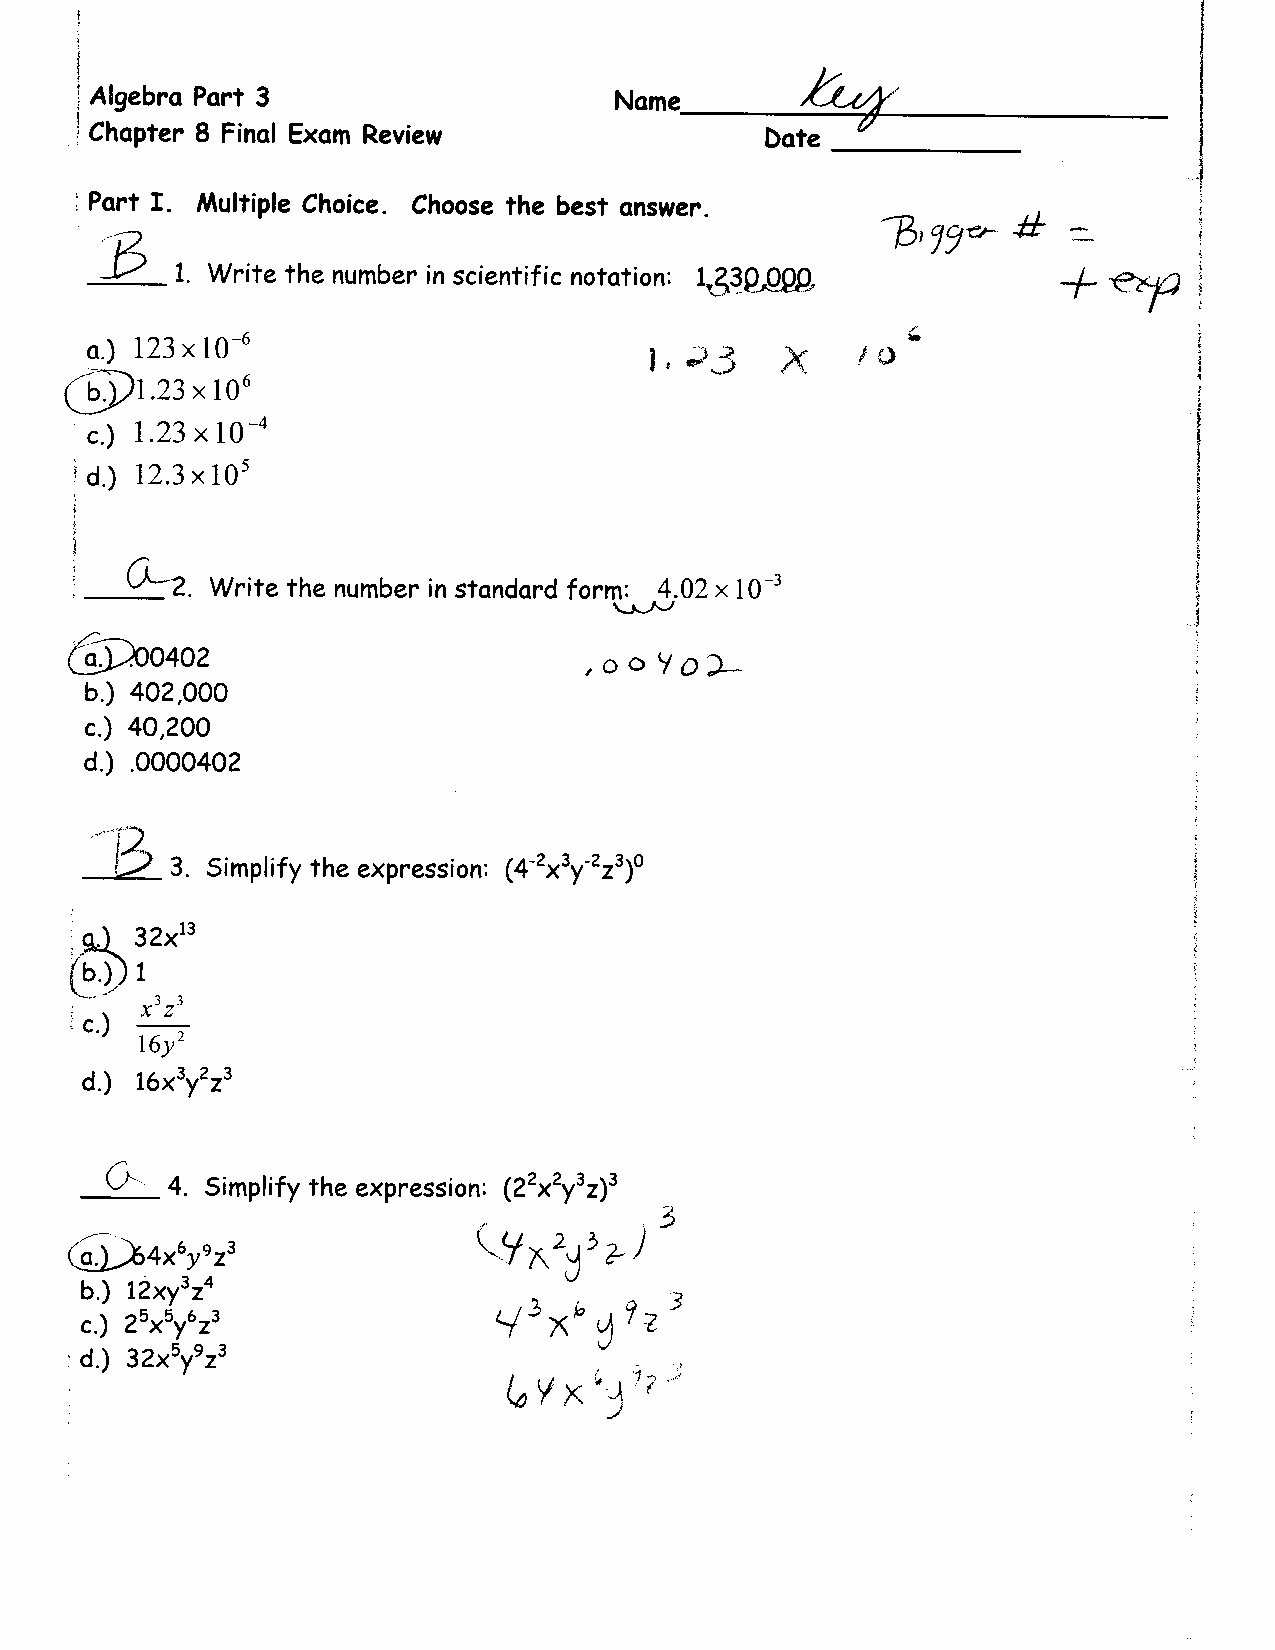 Algebra 2 Review Worksheet Best Of Algebra 2 Review Worksheets Algebra Alistairtheoptimist